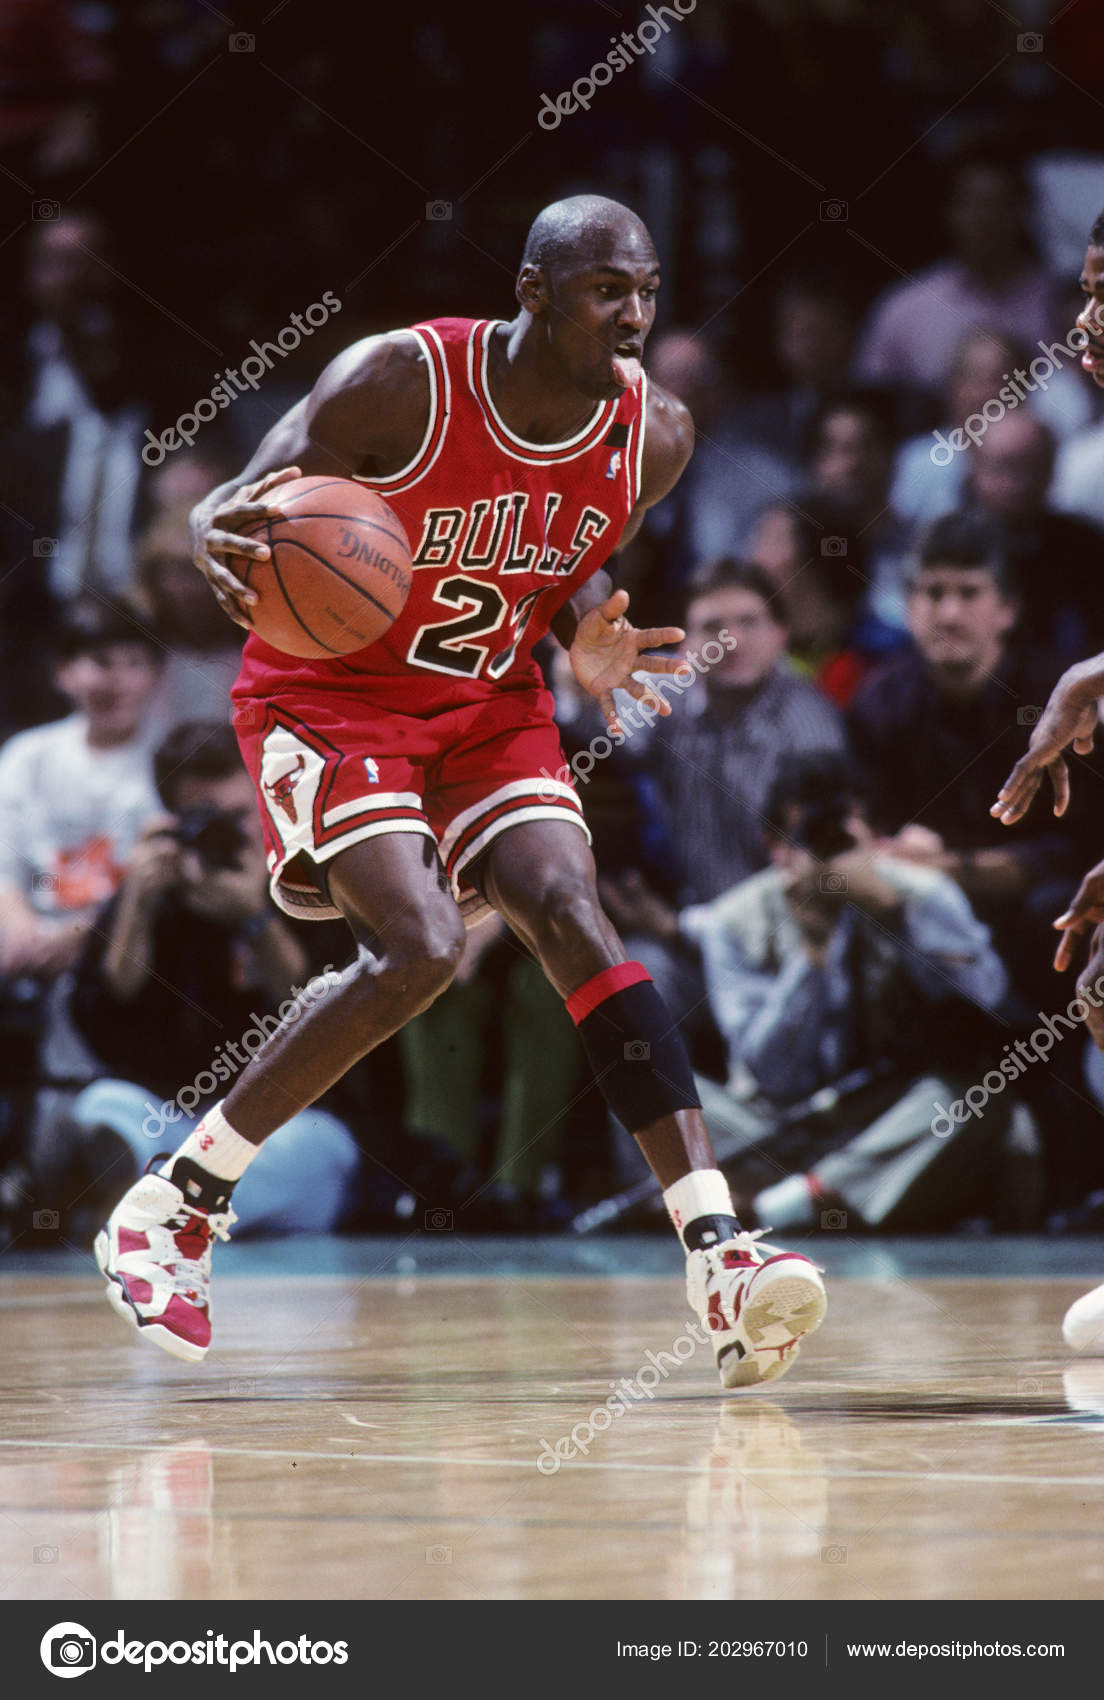 Michael Jordan Hall Fame Player Who 